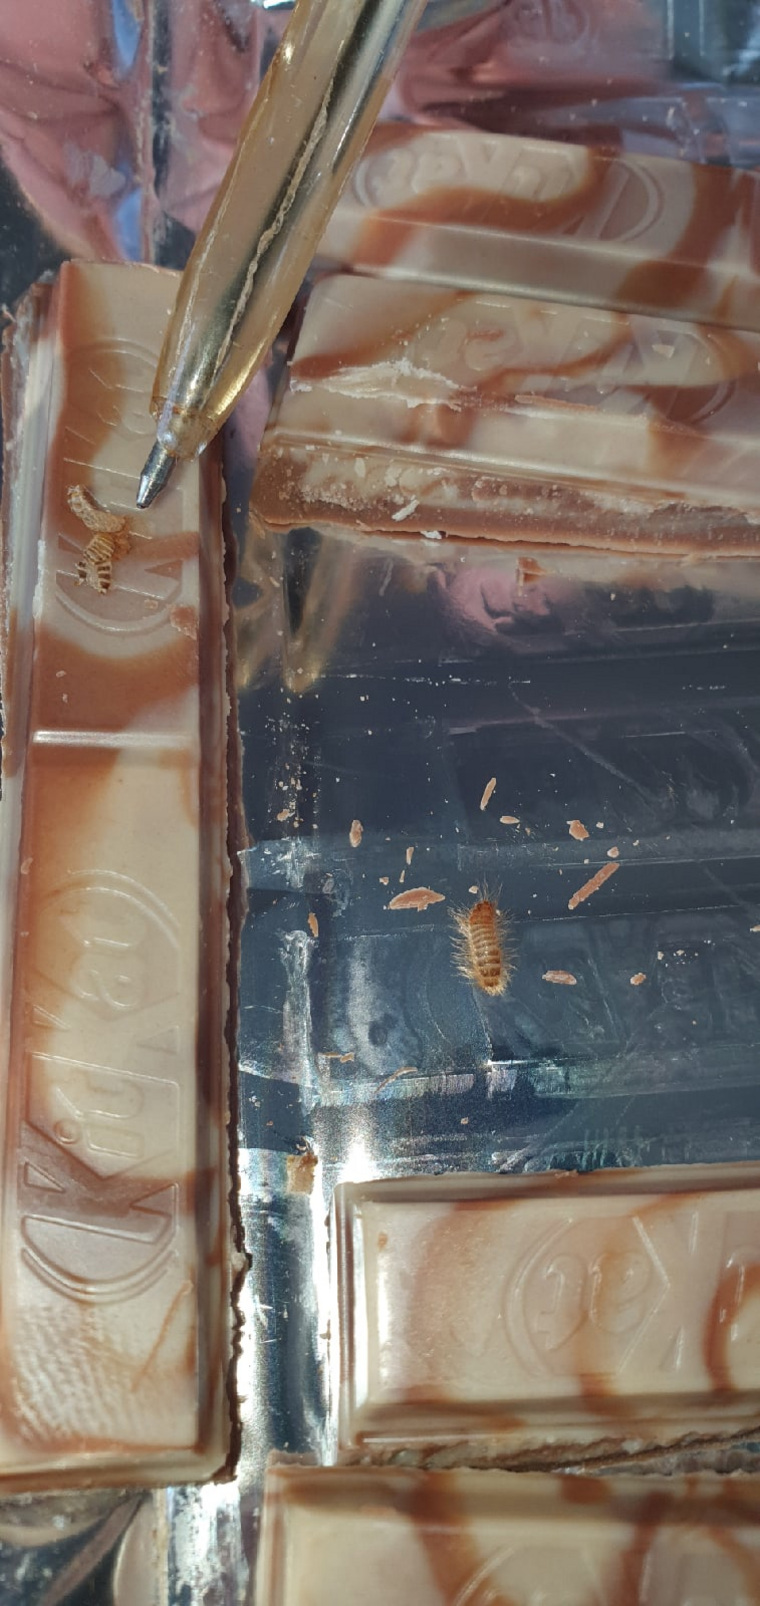 В упаковке, по словам пользователя, были найдены личинки и насекомое